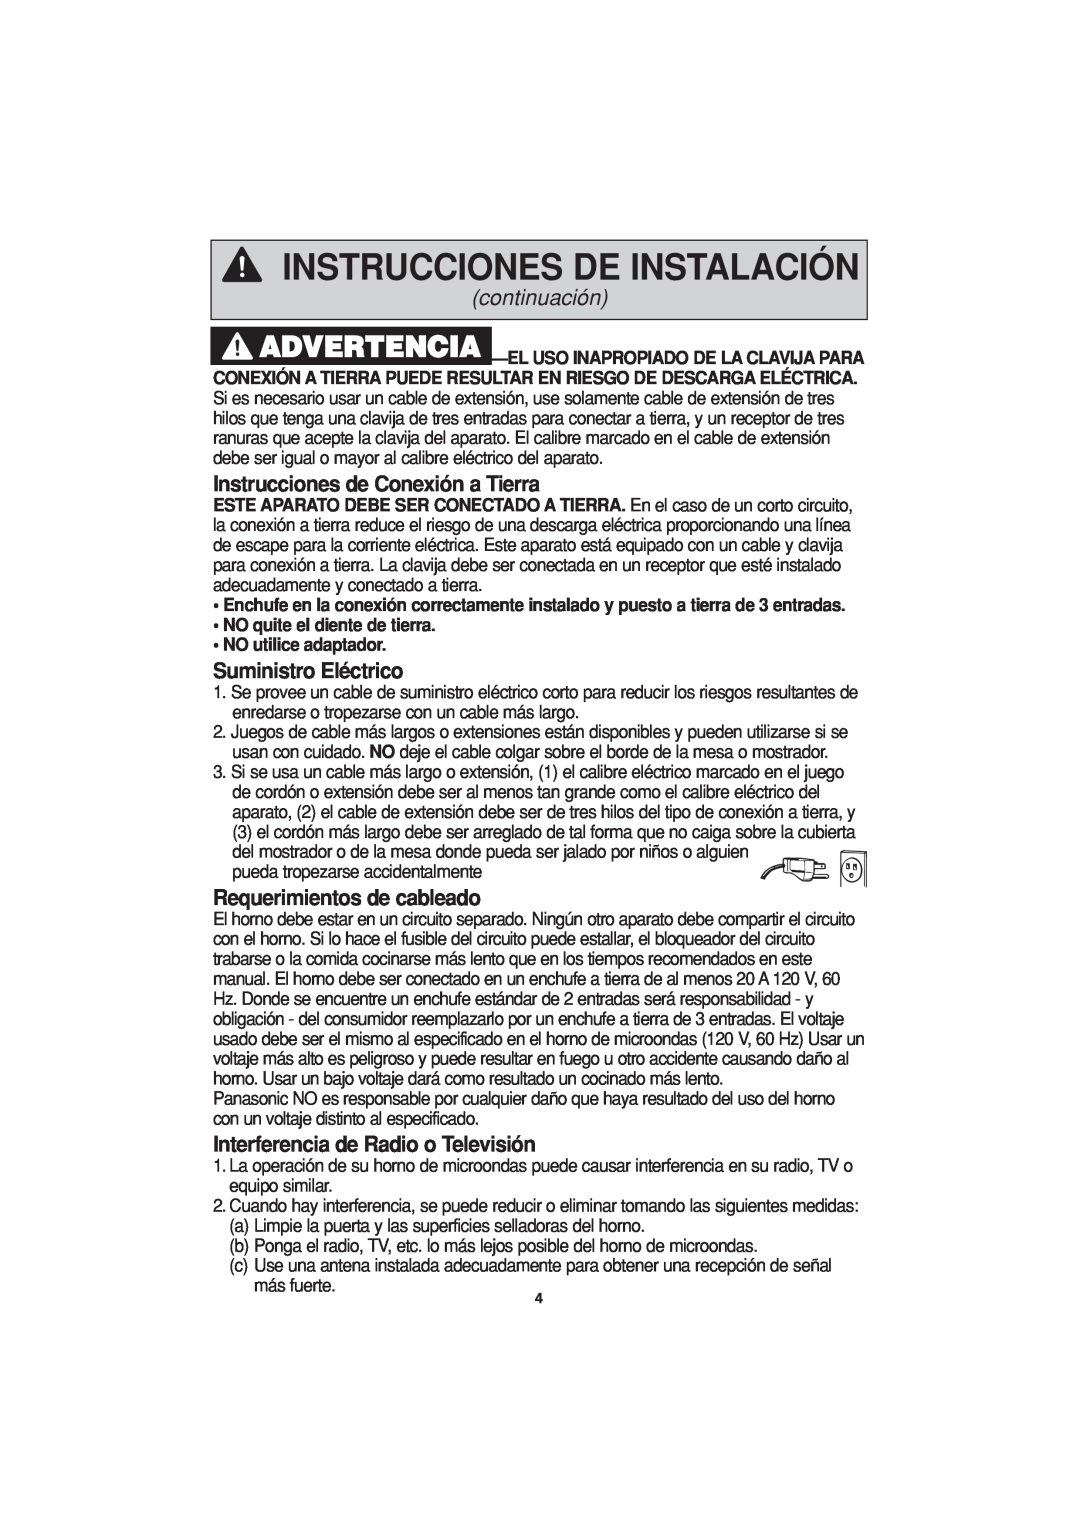 Panasonic NN-H624 Instrucciones de Conexión a Tierra, Suministro Eléctrico, Requerimientos de cableado, continuación 